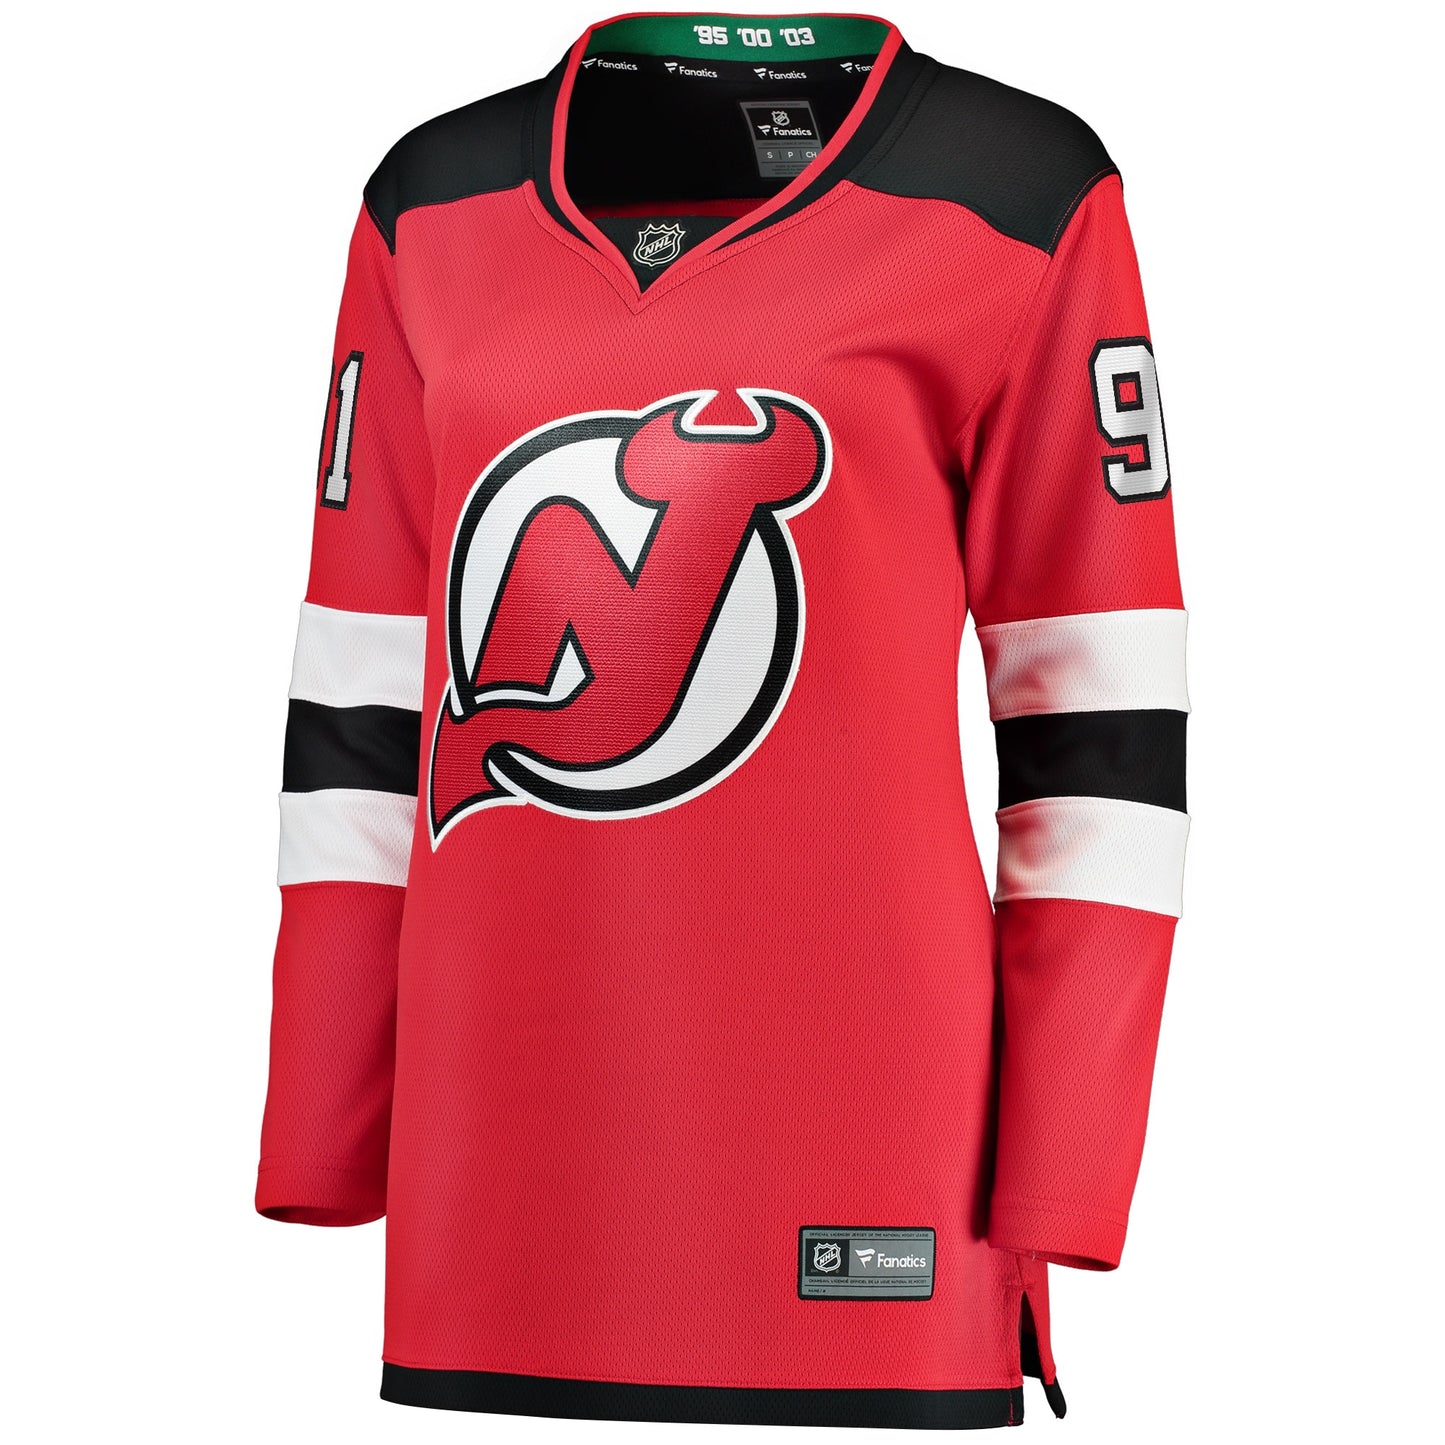 Dawson Mercer New Jersey Devils Fanatics Branded Women's Home Breakaway Jersey - Red